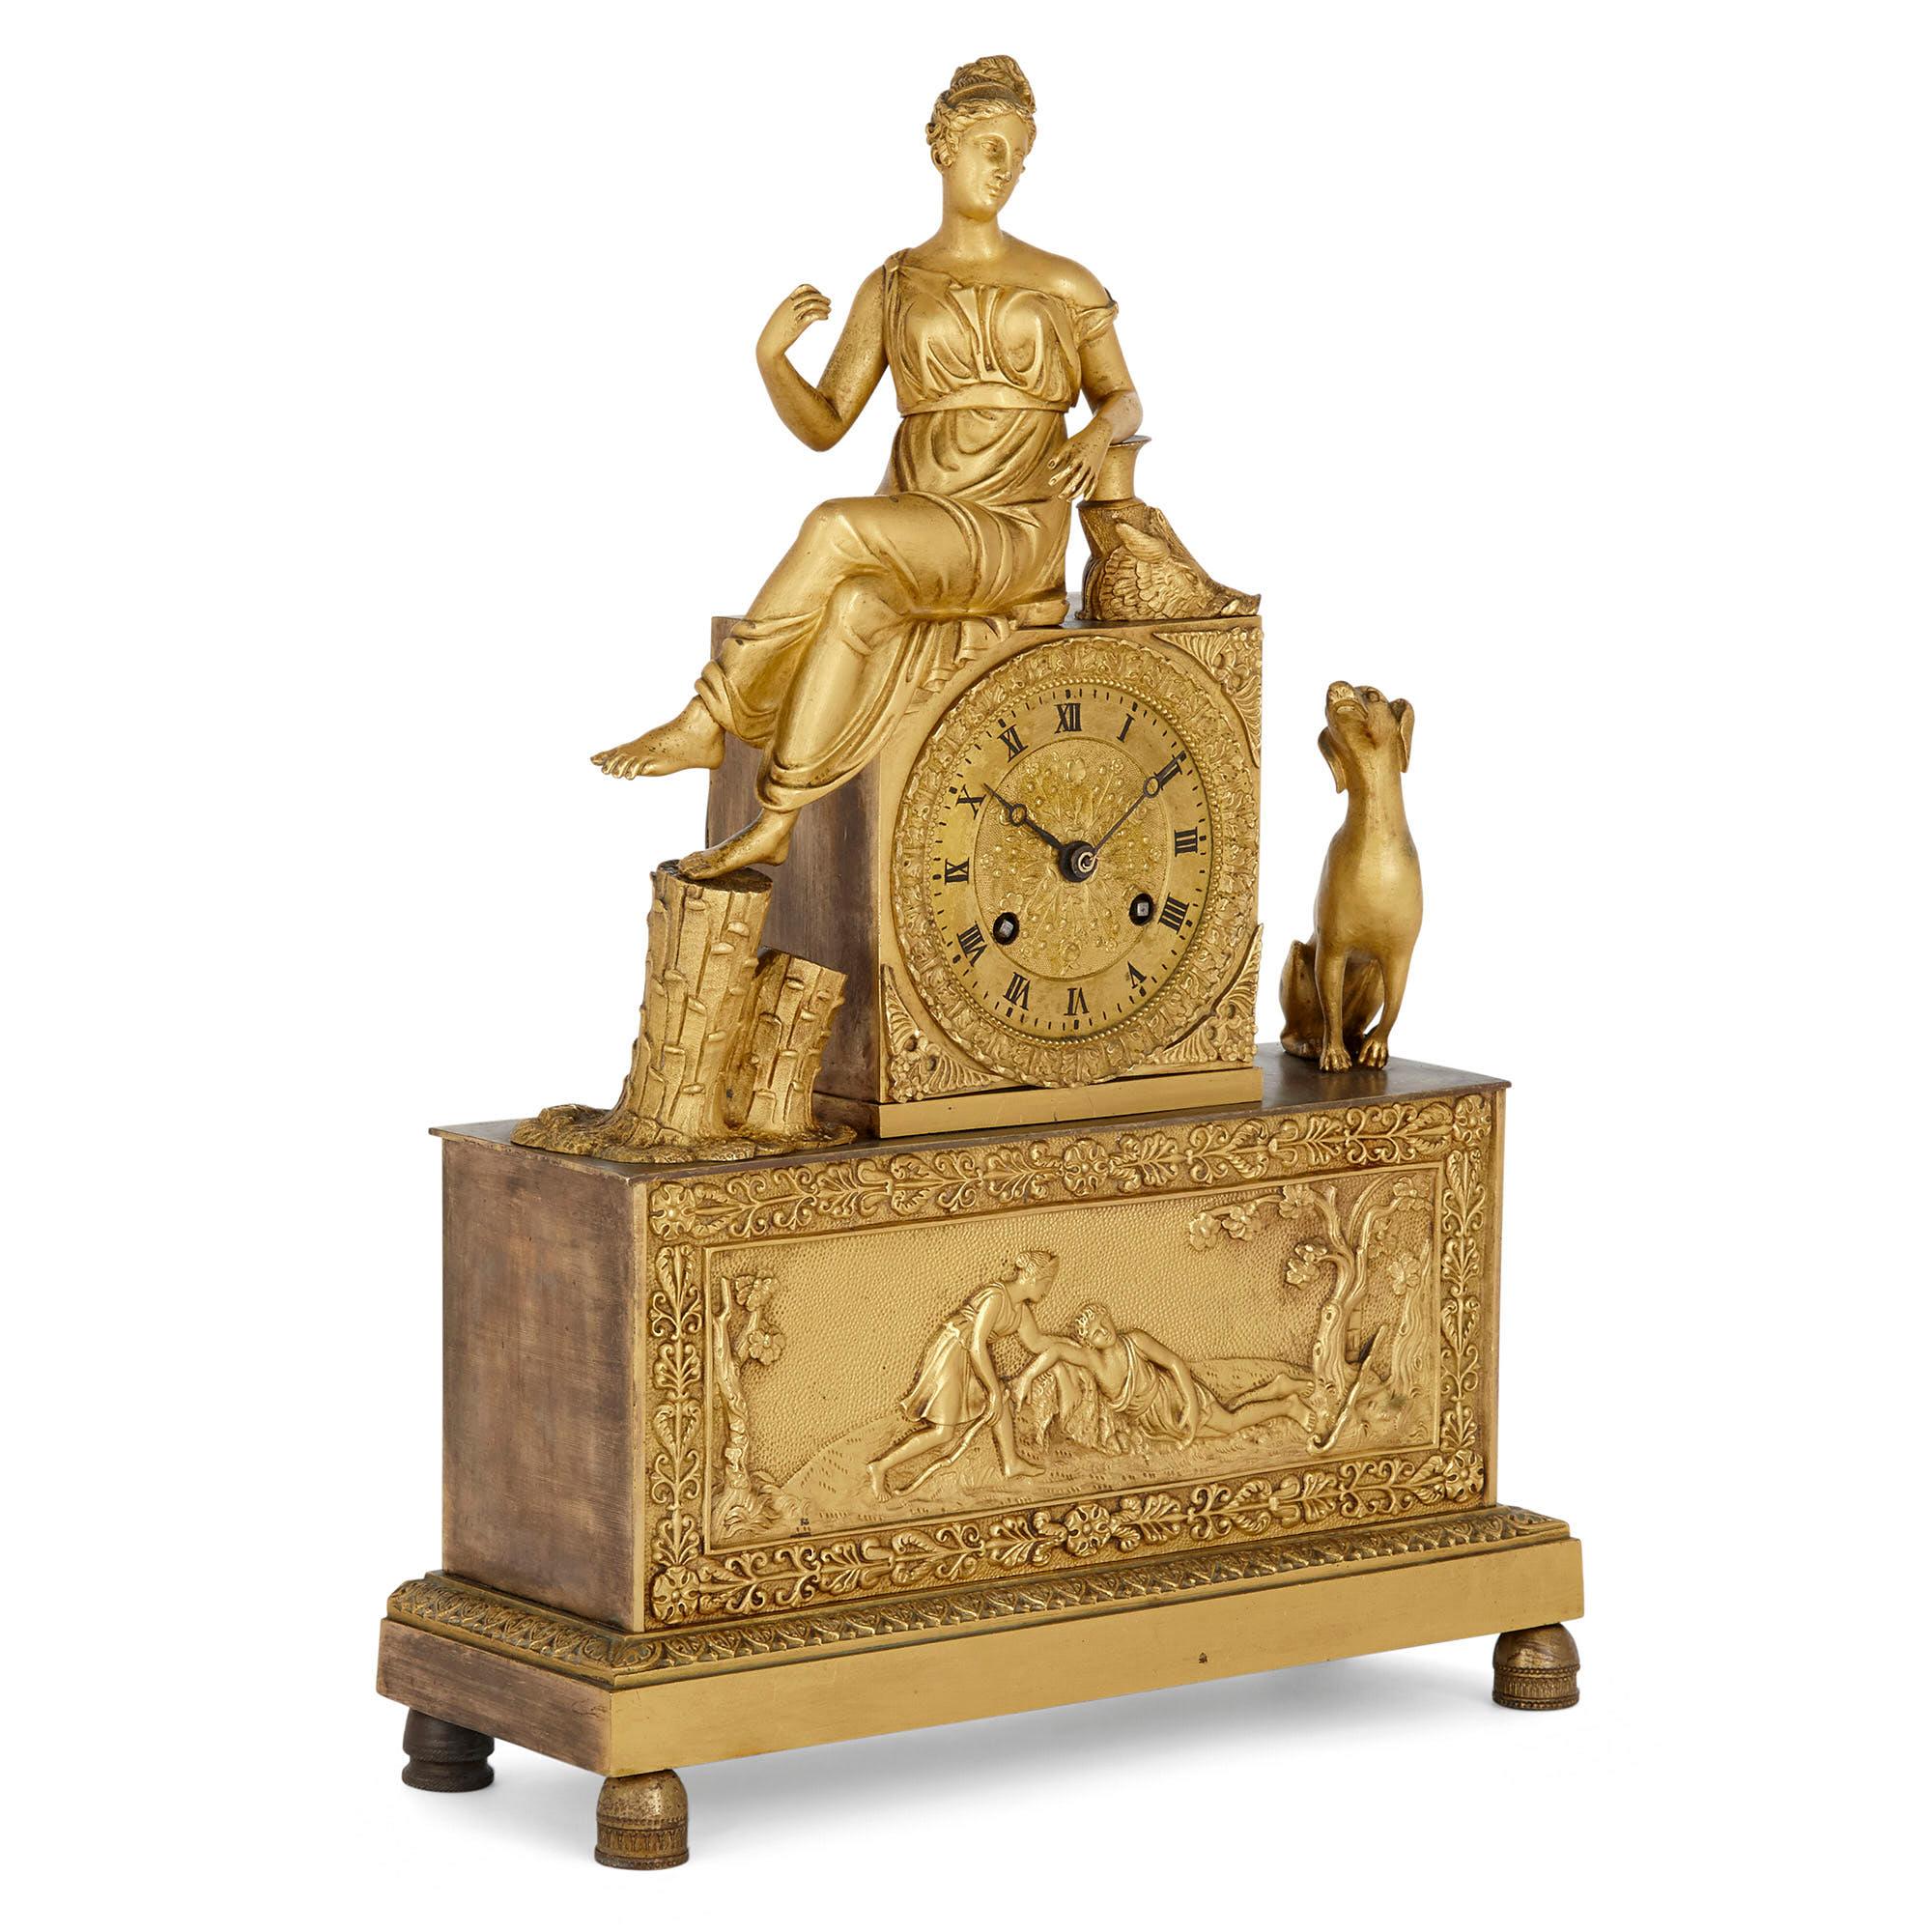 Französische Empire-Uhr aus vergoldeter Bronze
Französisch, frühes 19. Jahrhundert
Maße: Höhe 38cm, Breite 27cm, Tiefe 10cm

Diese schöne vergoldete Bronzeuhr ist ein hervorragendes Beispiel für die Art und den Stil der Uhren, die in der